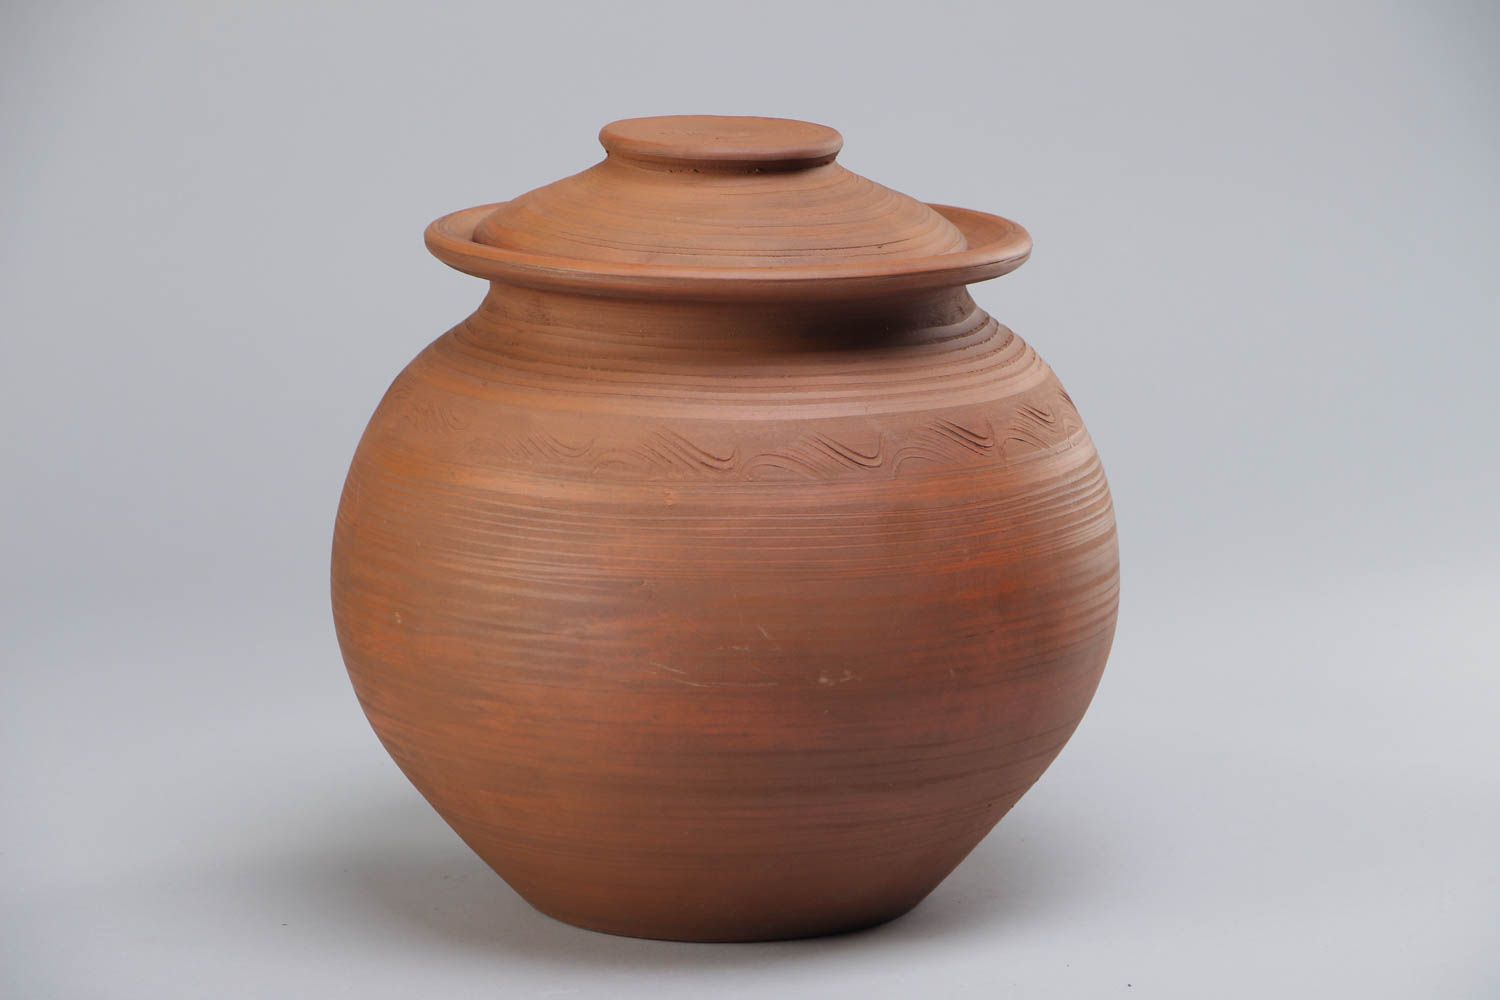 Grand pot en céramique pour cuisiner fait main 3 litres brun avec couvercle photo 2